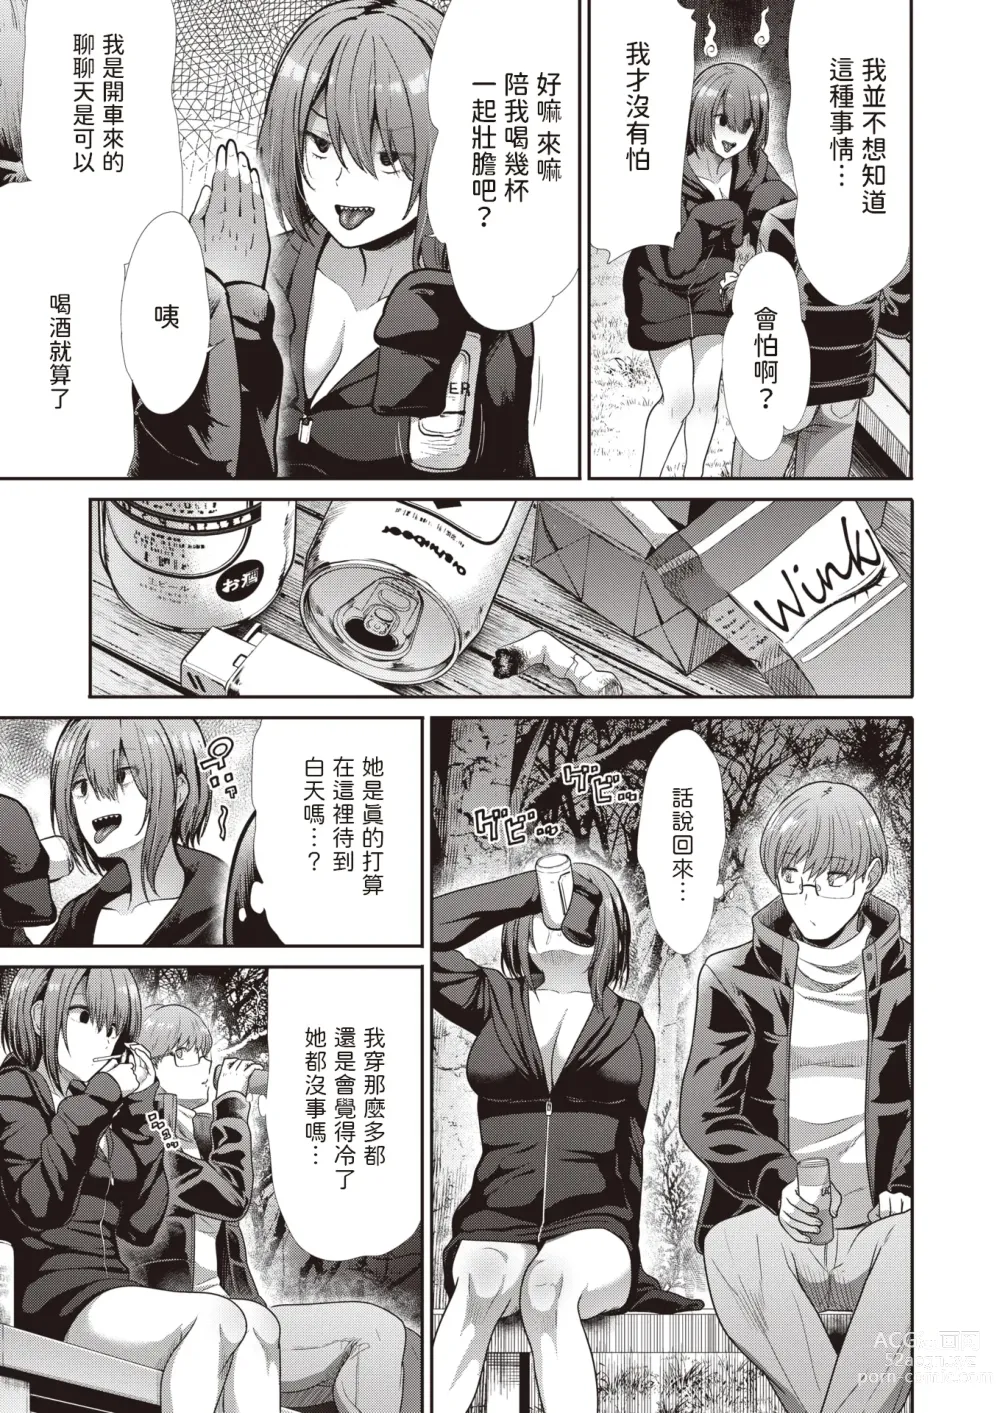 Page 3 of manga Yomawari - Walking at Night